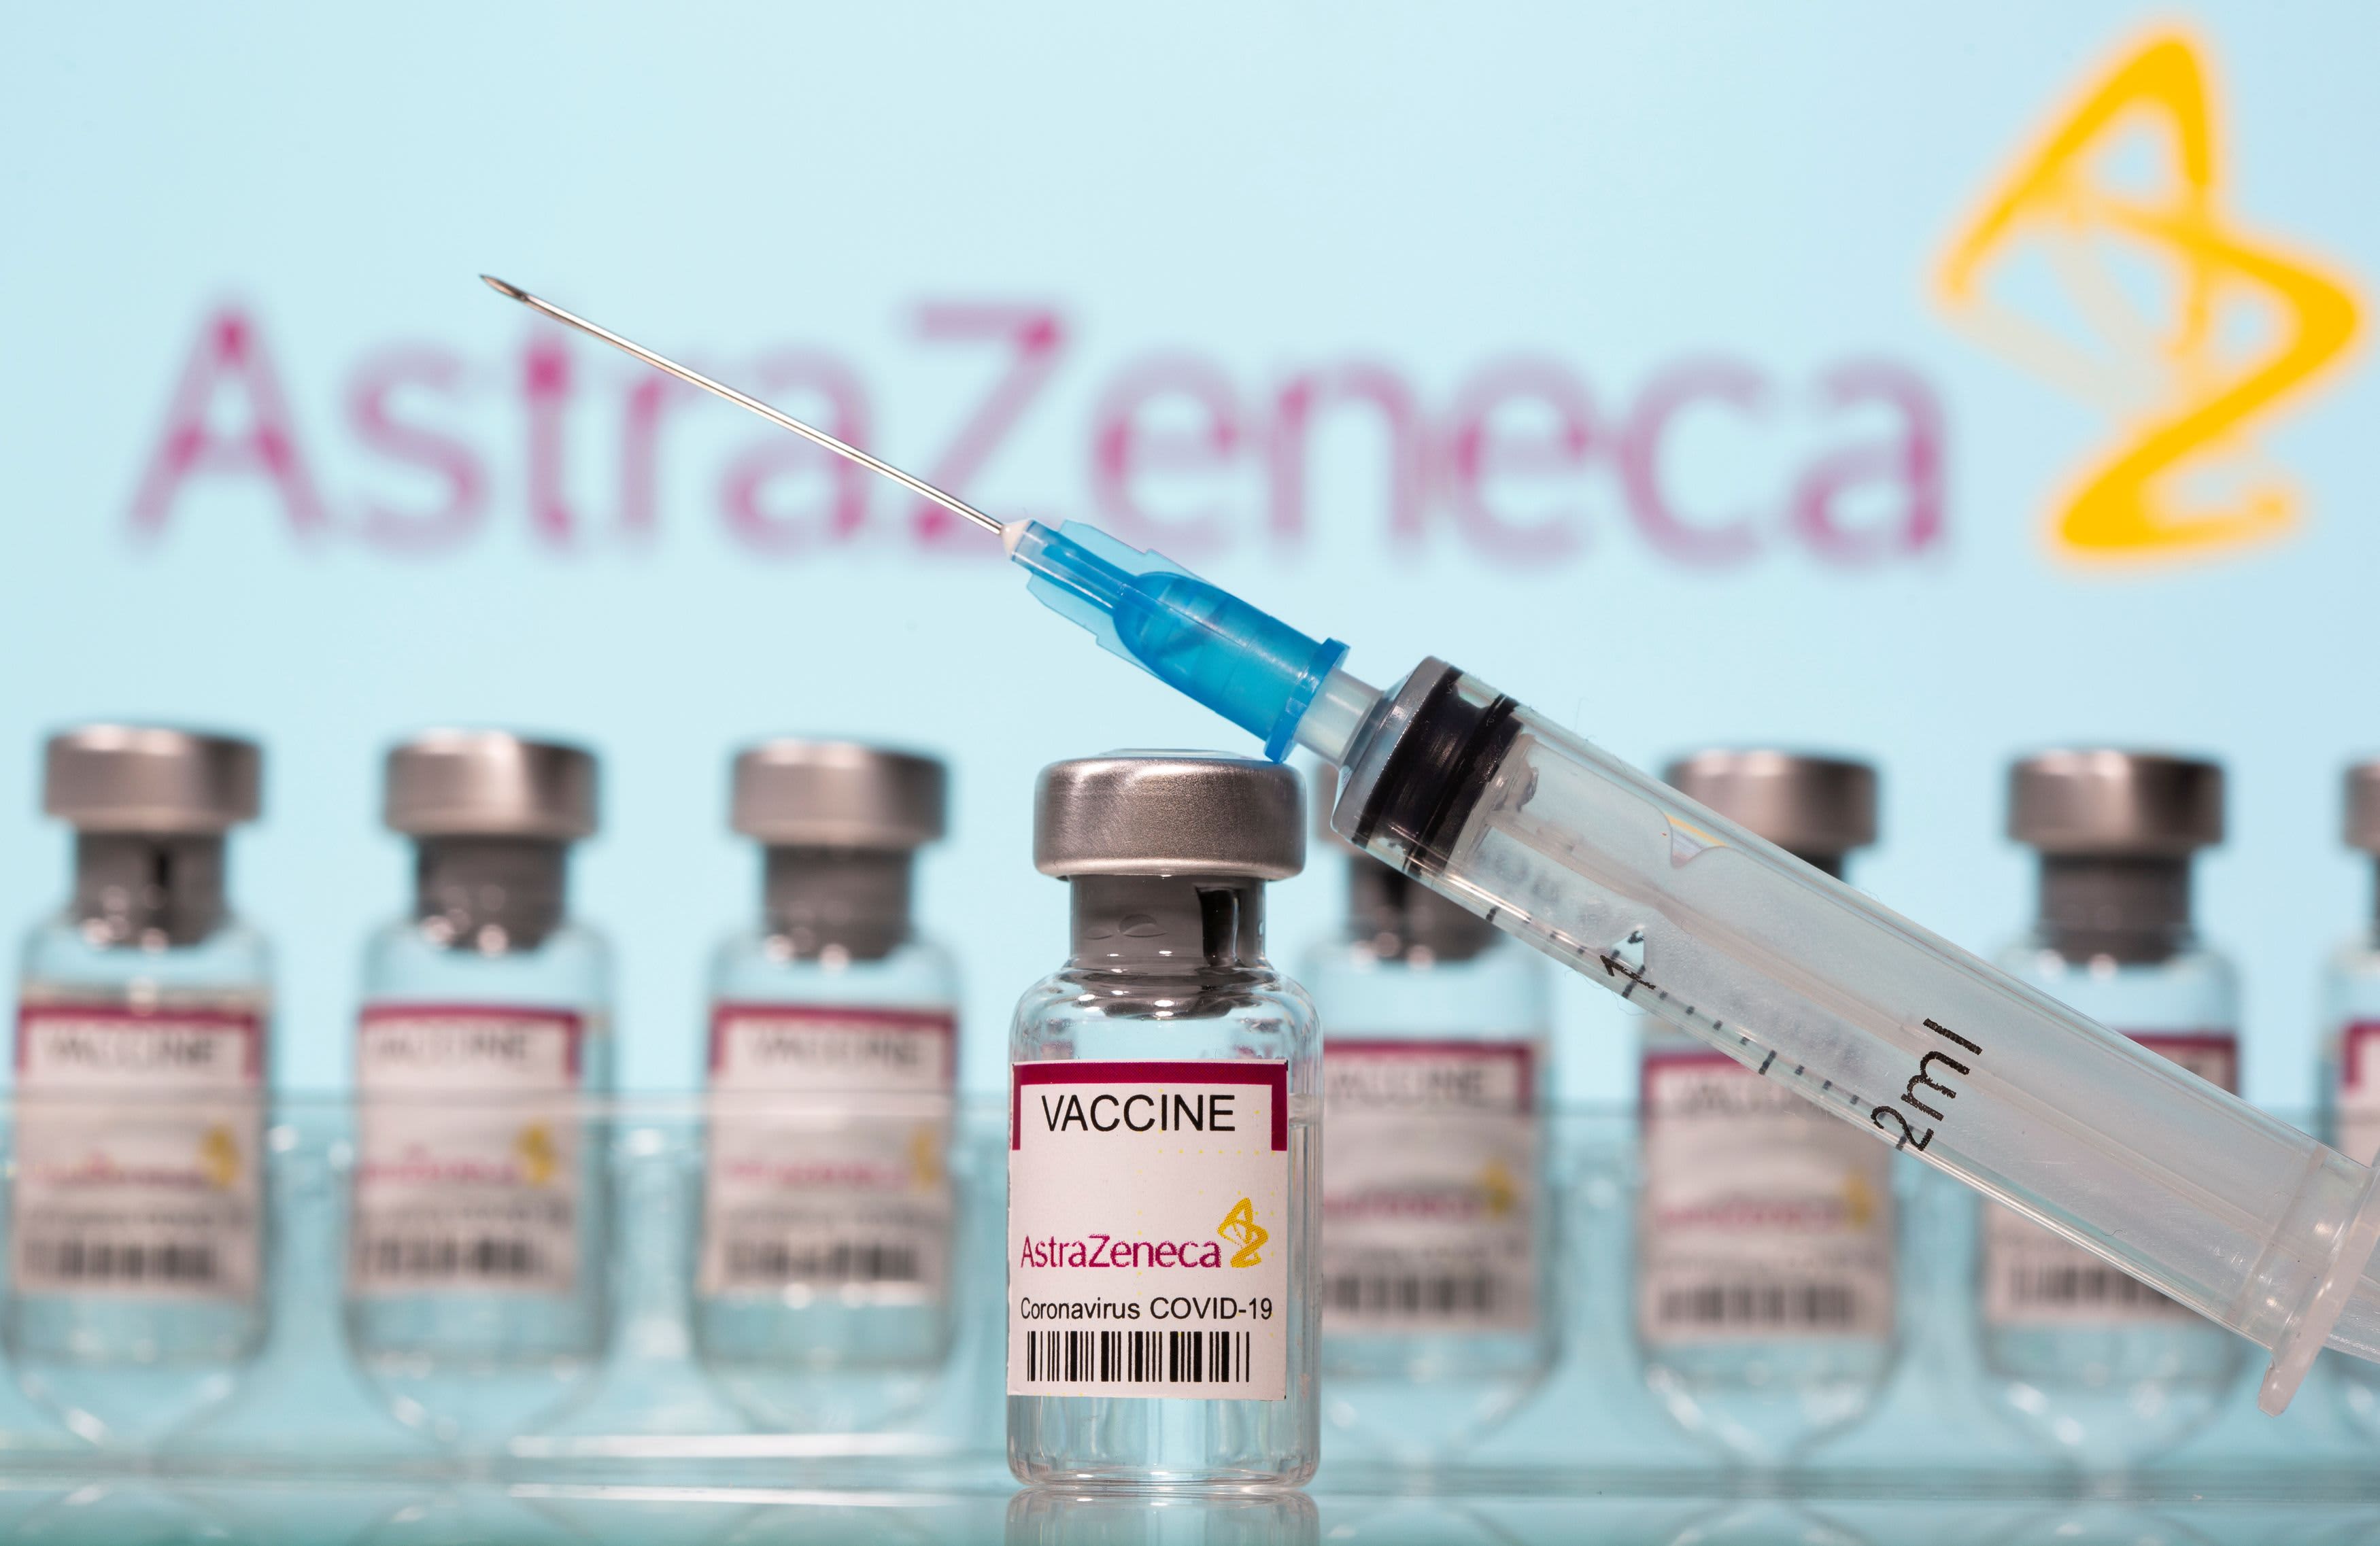 More EU nations suspend AstraZeneca shot as regulator says benefits still outweigh the risks